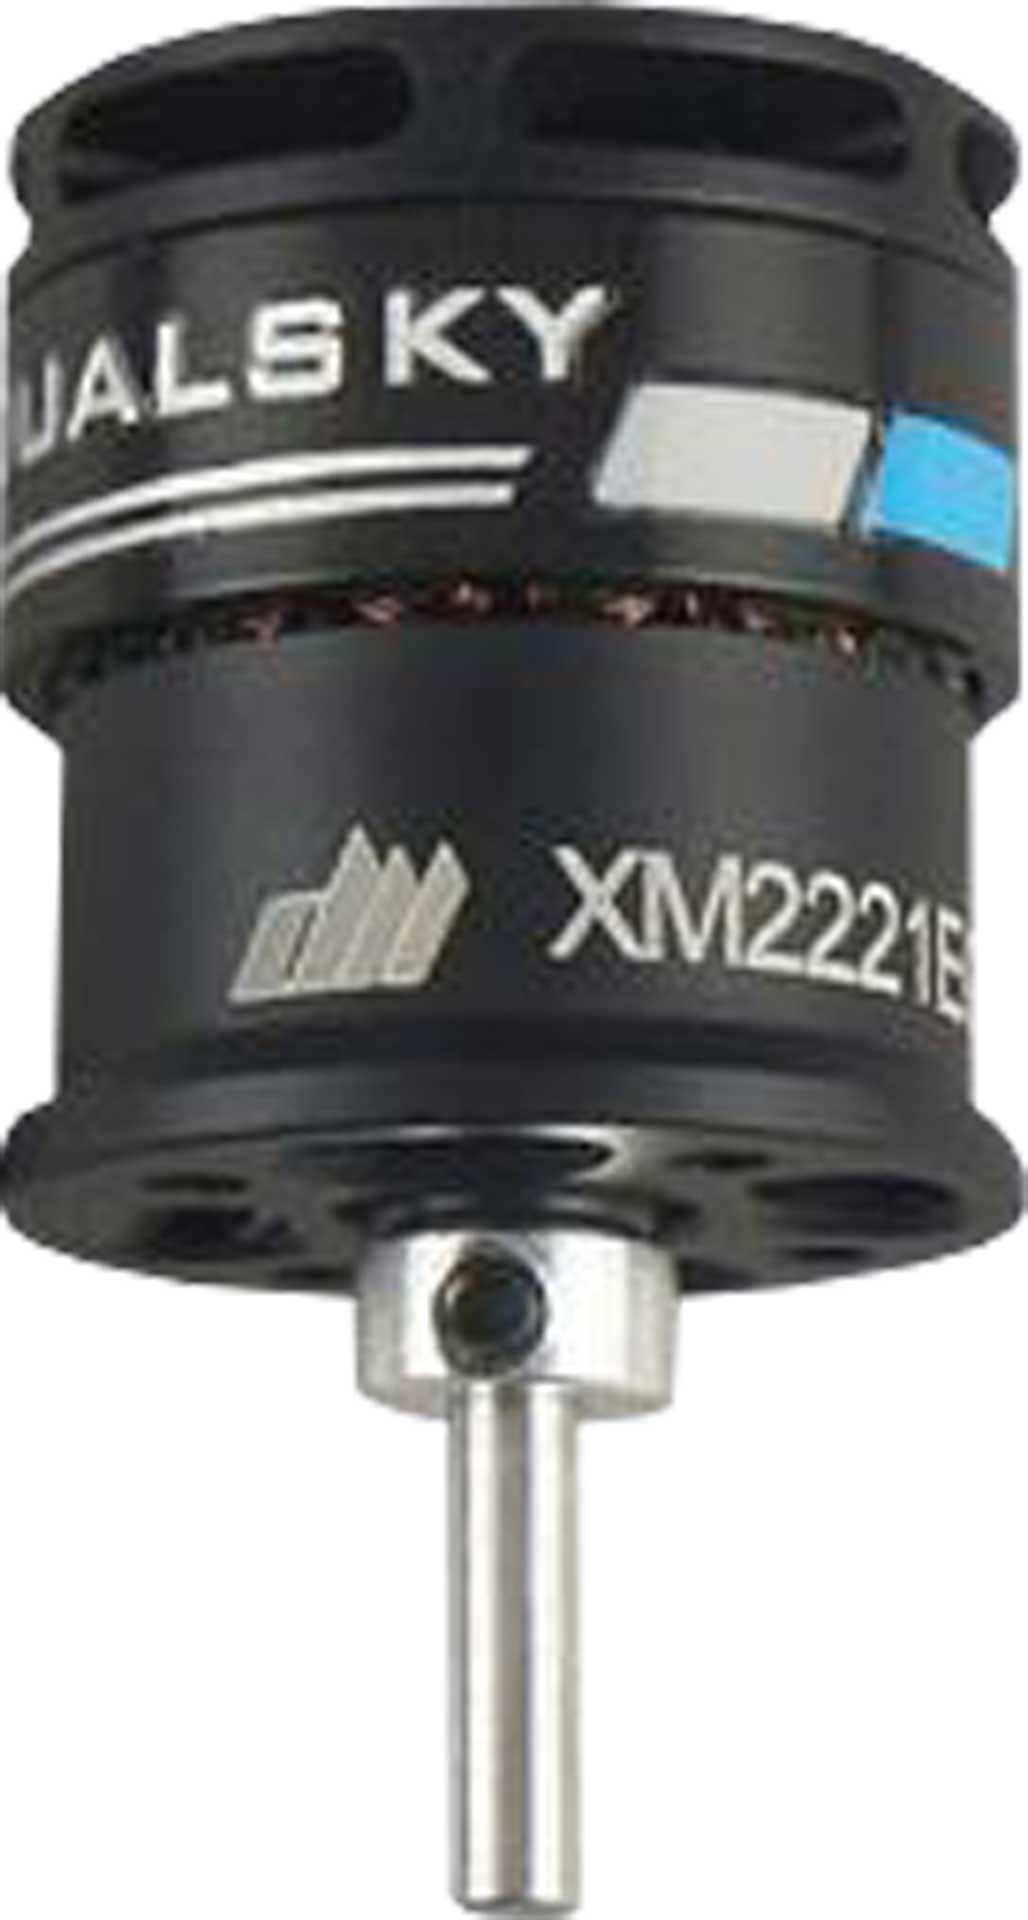 DUALSKY XMotor XM2221EG-38 K/V 1700 122,1W Brushless Motor